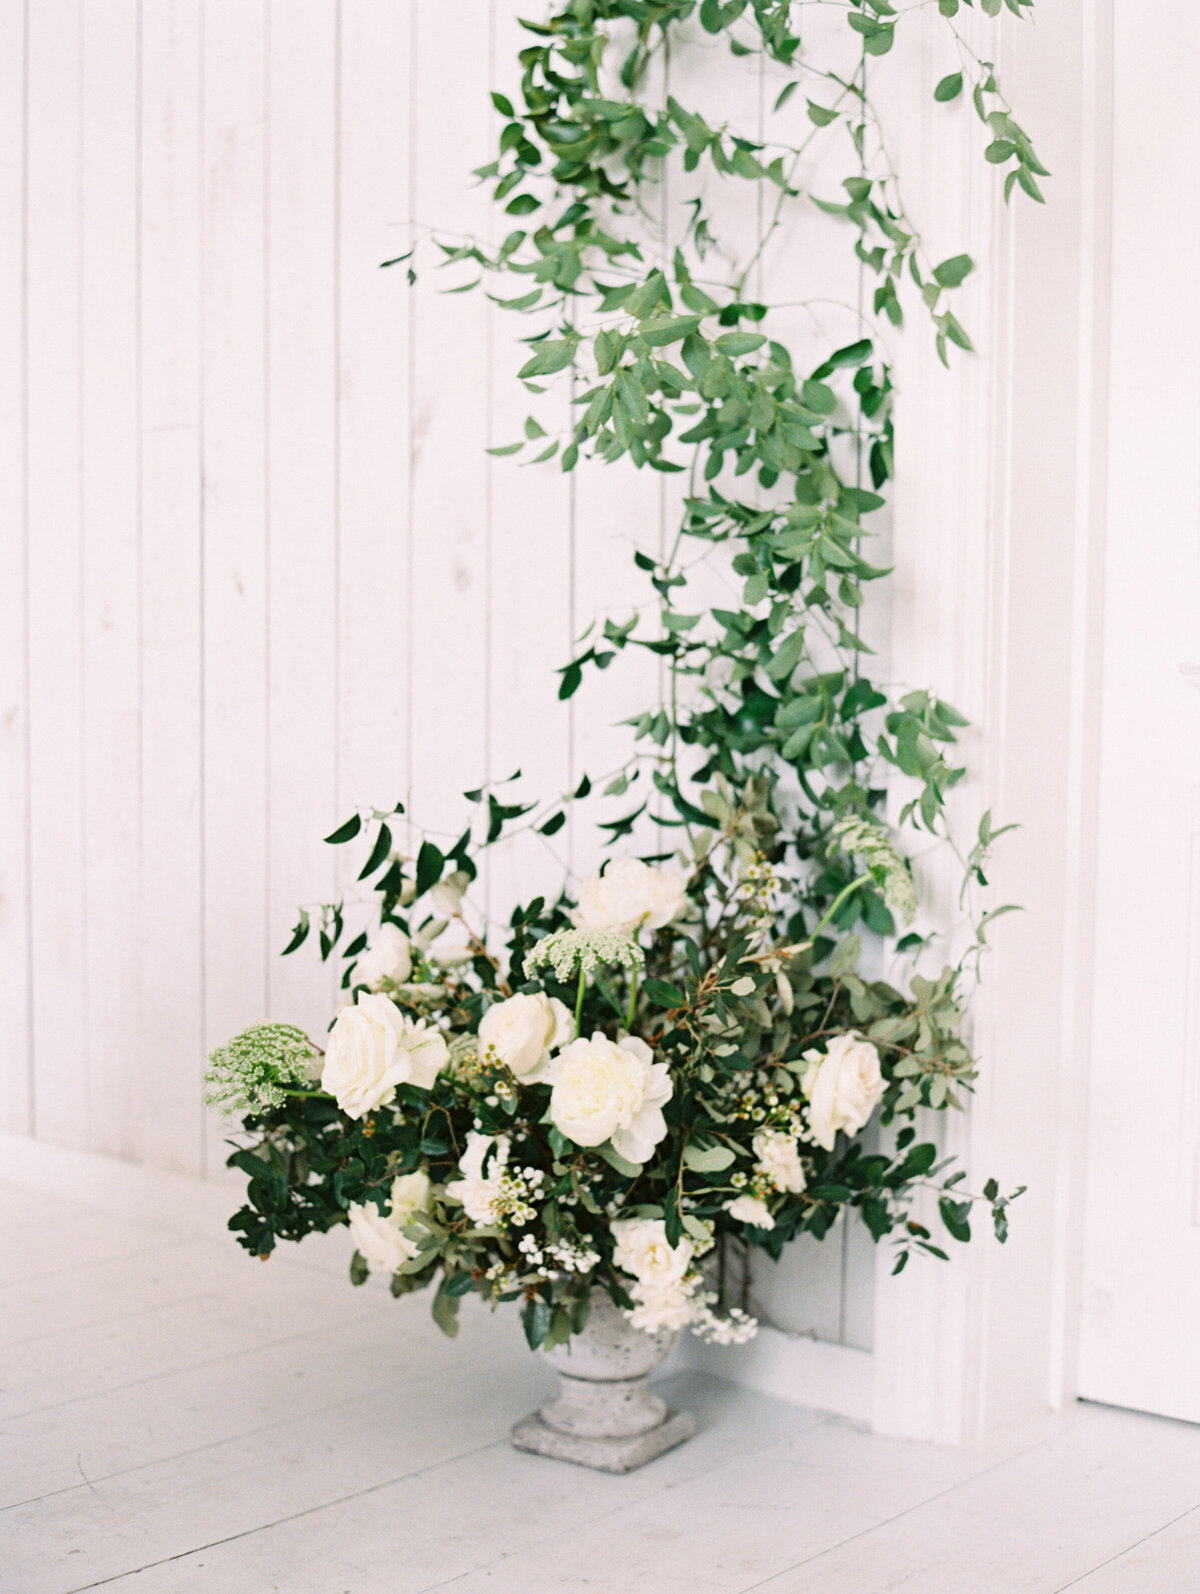 max-owens-design-white-green-flower-wedding-17-arrangement